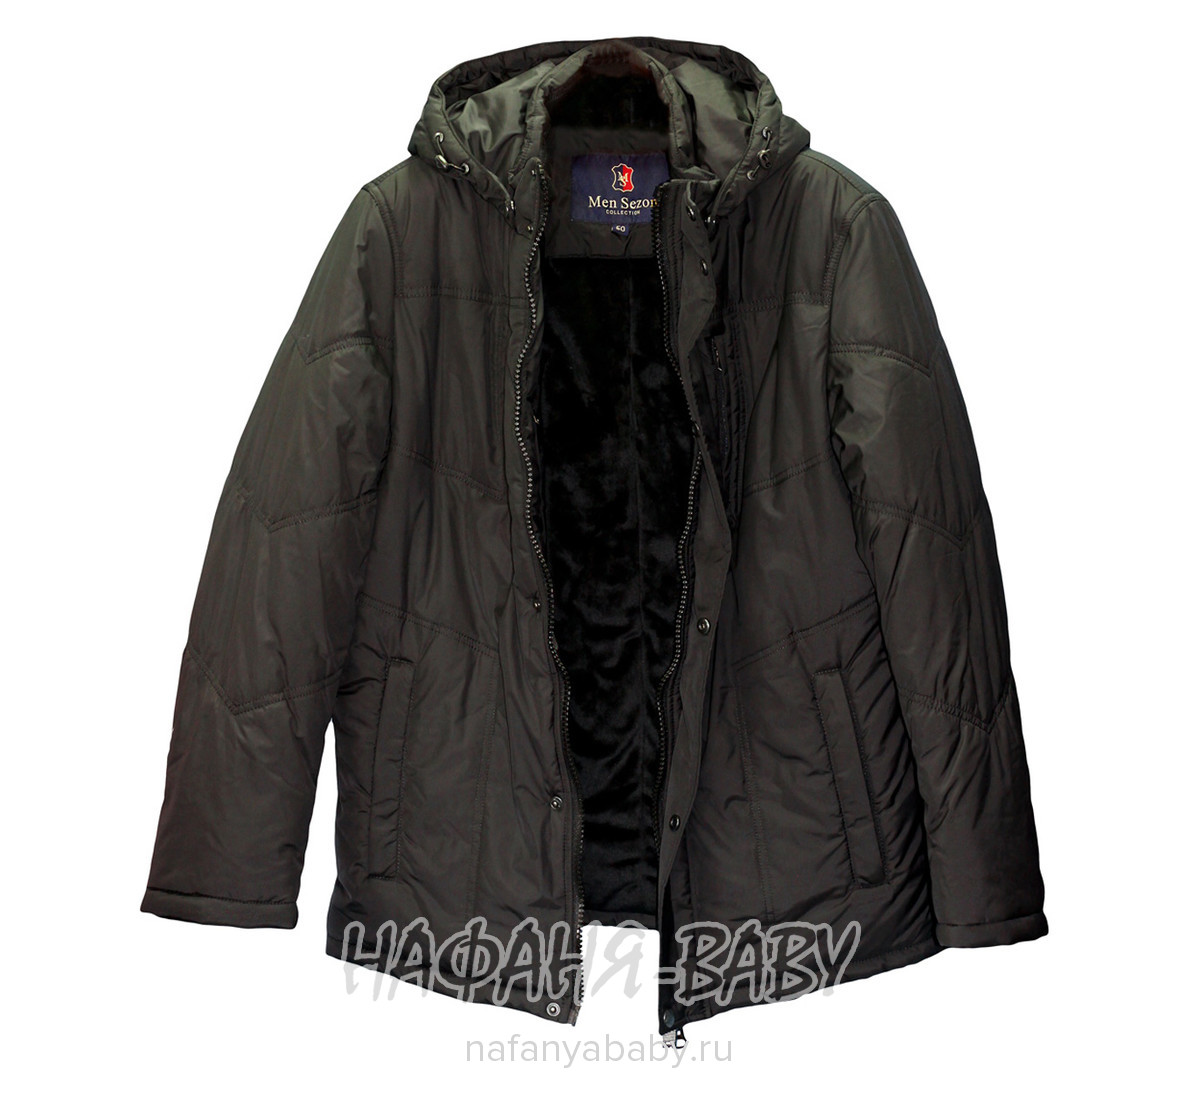 Куртка демисезонная MEN SEZON, купить в интернет магазине Нафаня. арт: 11910.